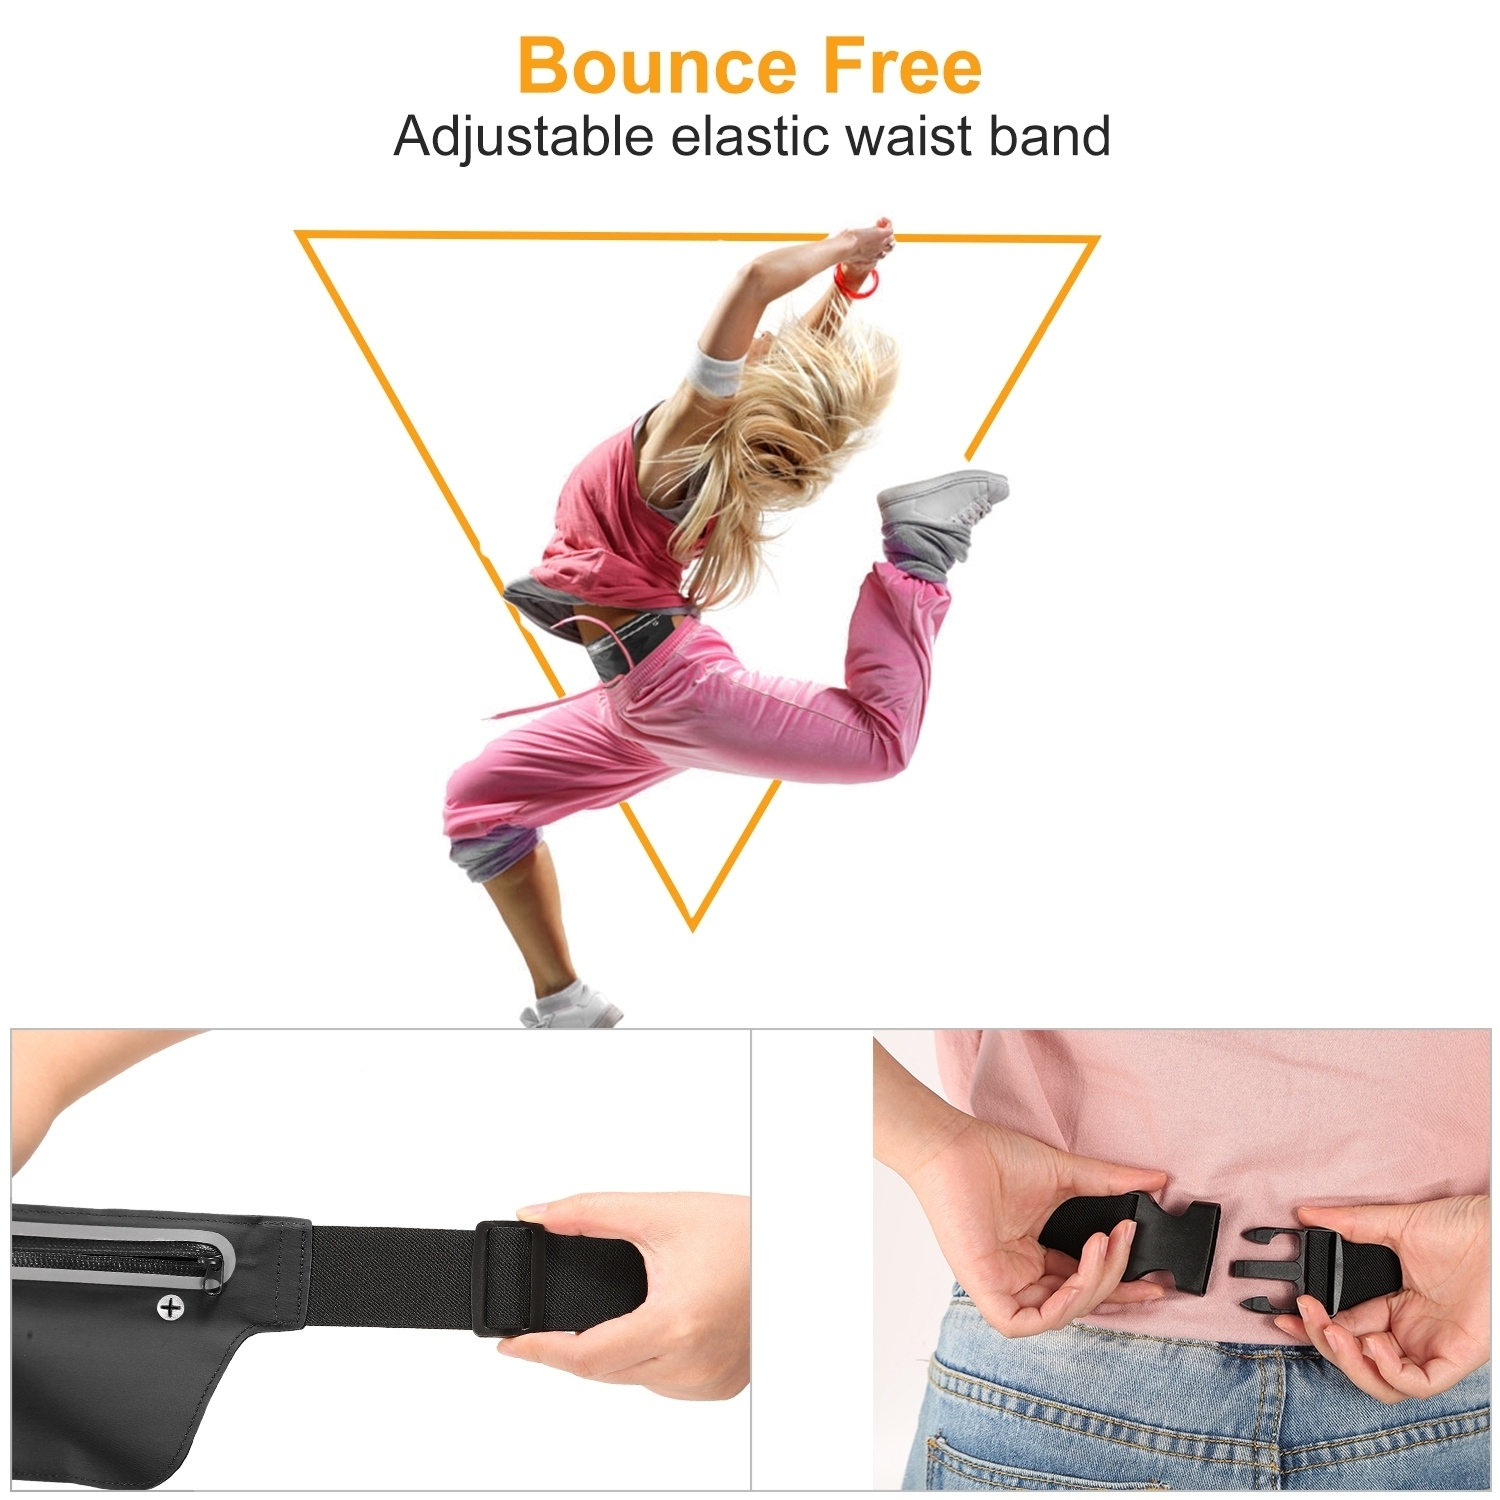 GLOBAL PHOENIX Sport Waist Pack Running Belt Bag Pouch Adjustable Bounce Free Sweat-Proof Lightweight Slim